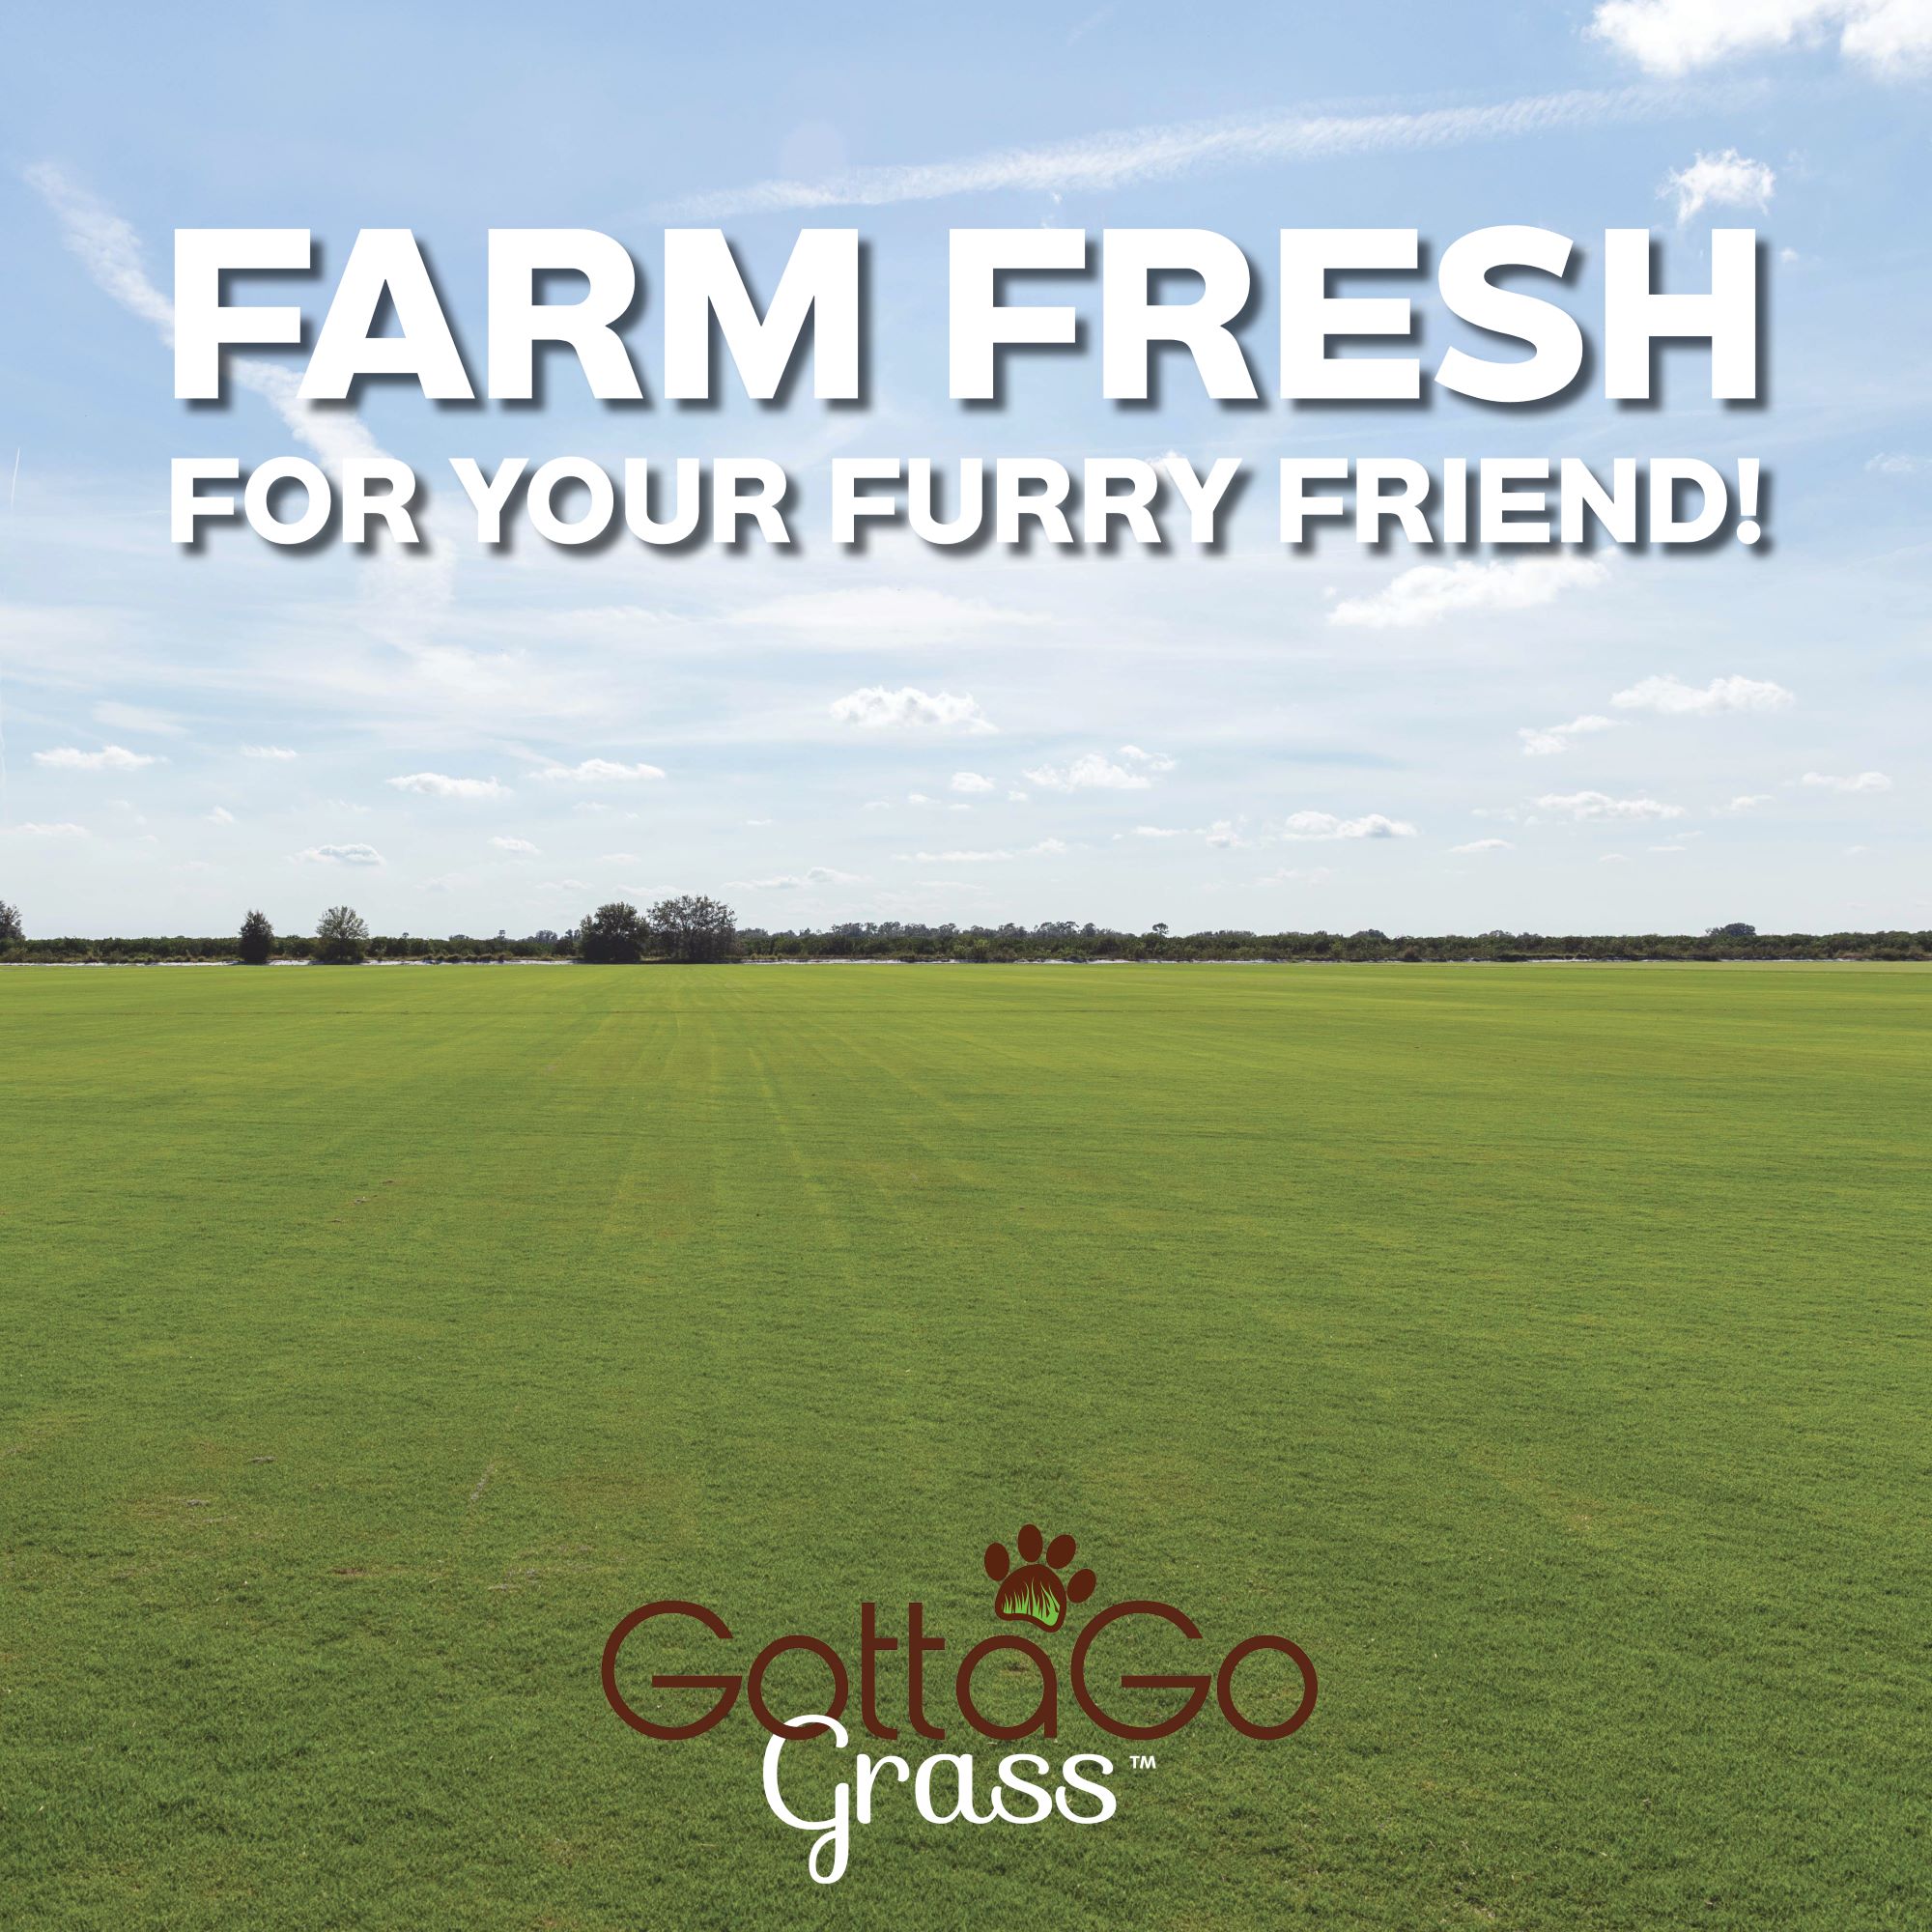 Gotta Go Grass: Farm Fresh